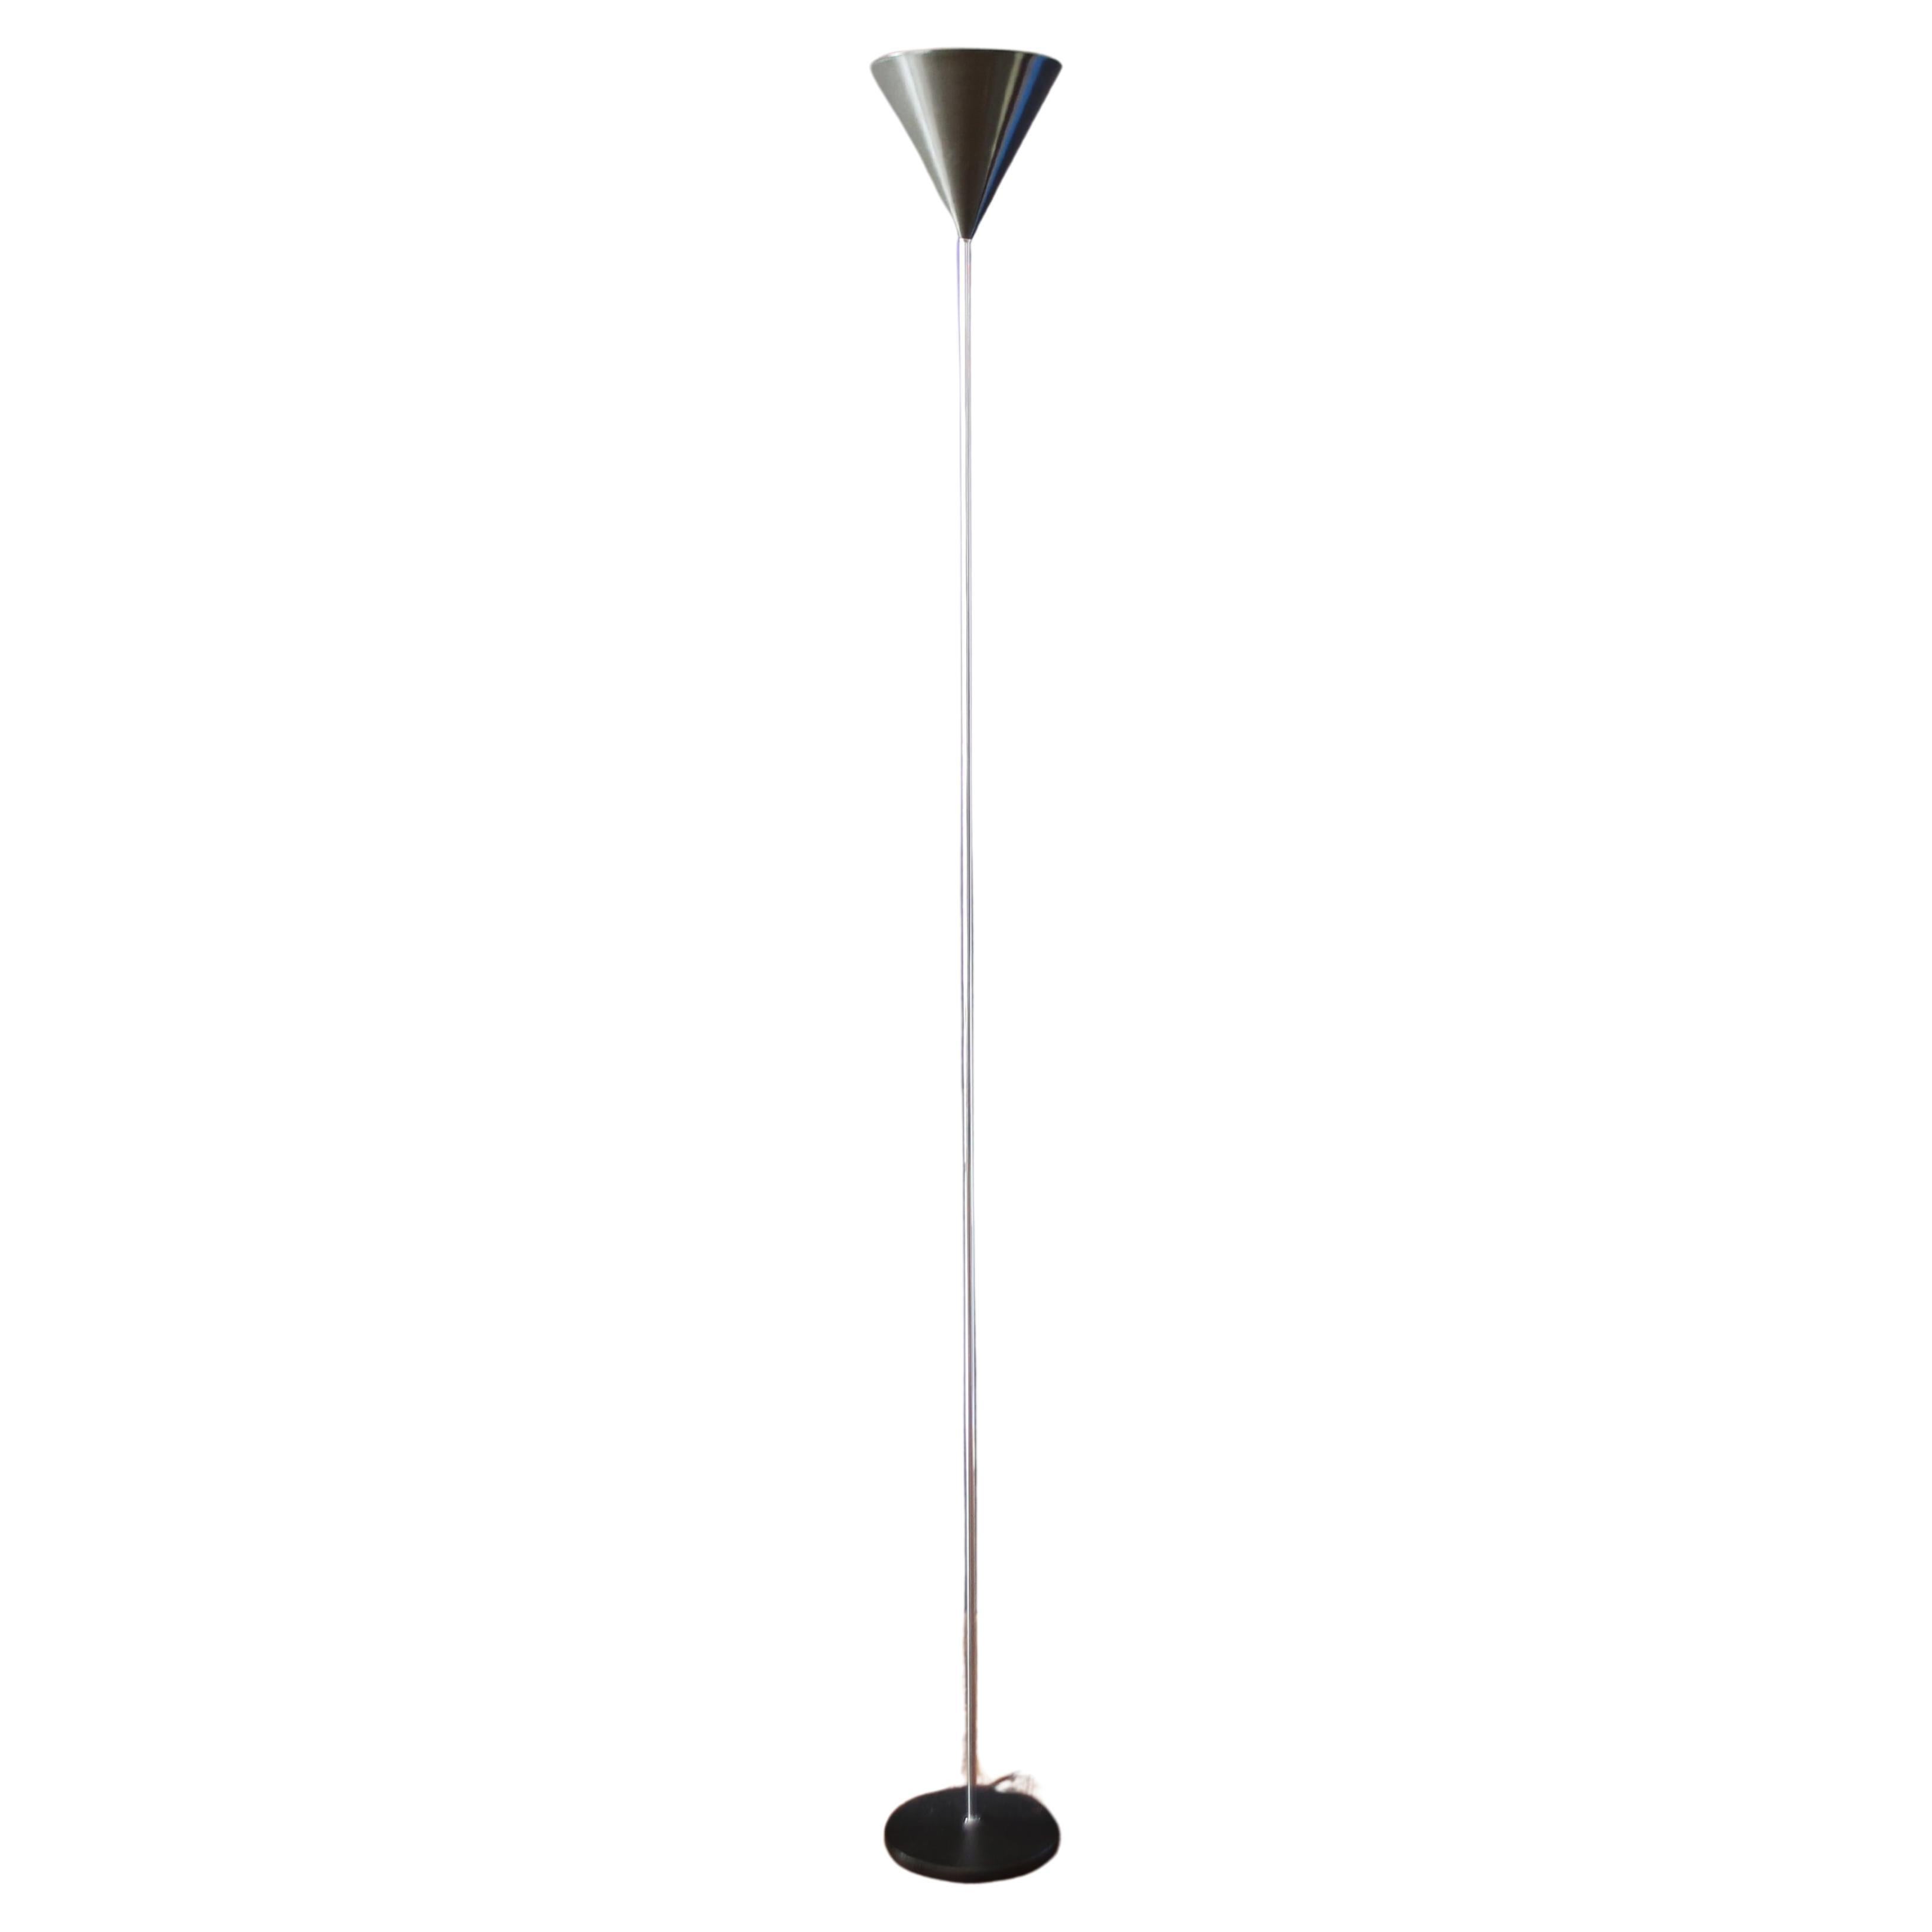 Luigi Caccia Dominioni  Funnel floor lamp  modell (LTE5) for azucena.